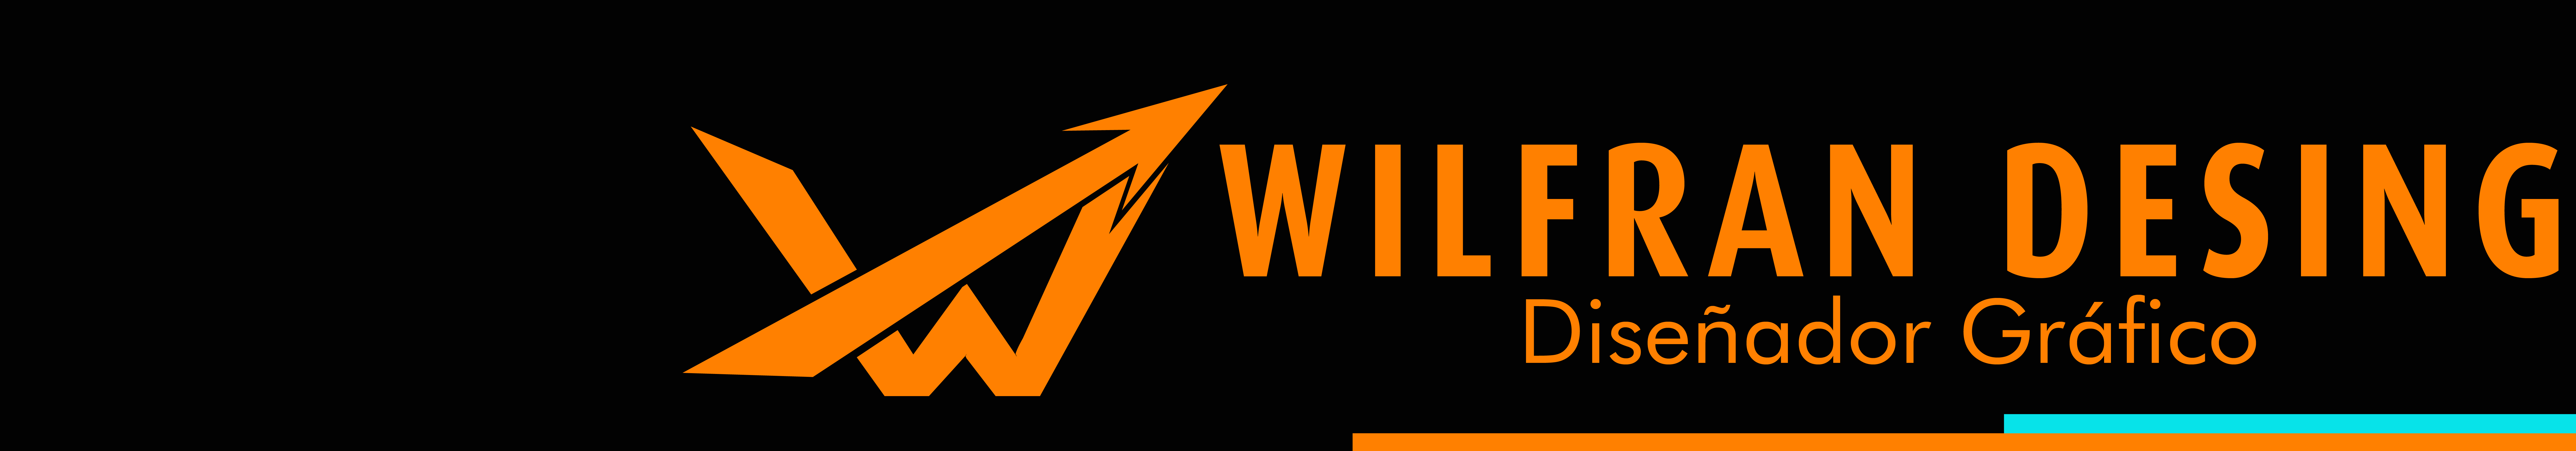 @WILFRAN Desing のプロファイルバナー